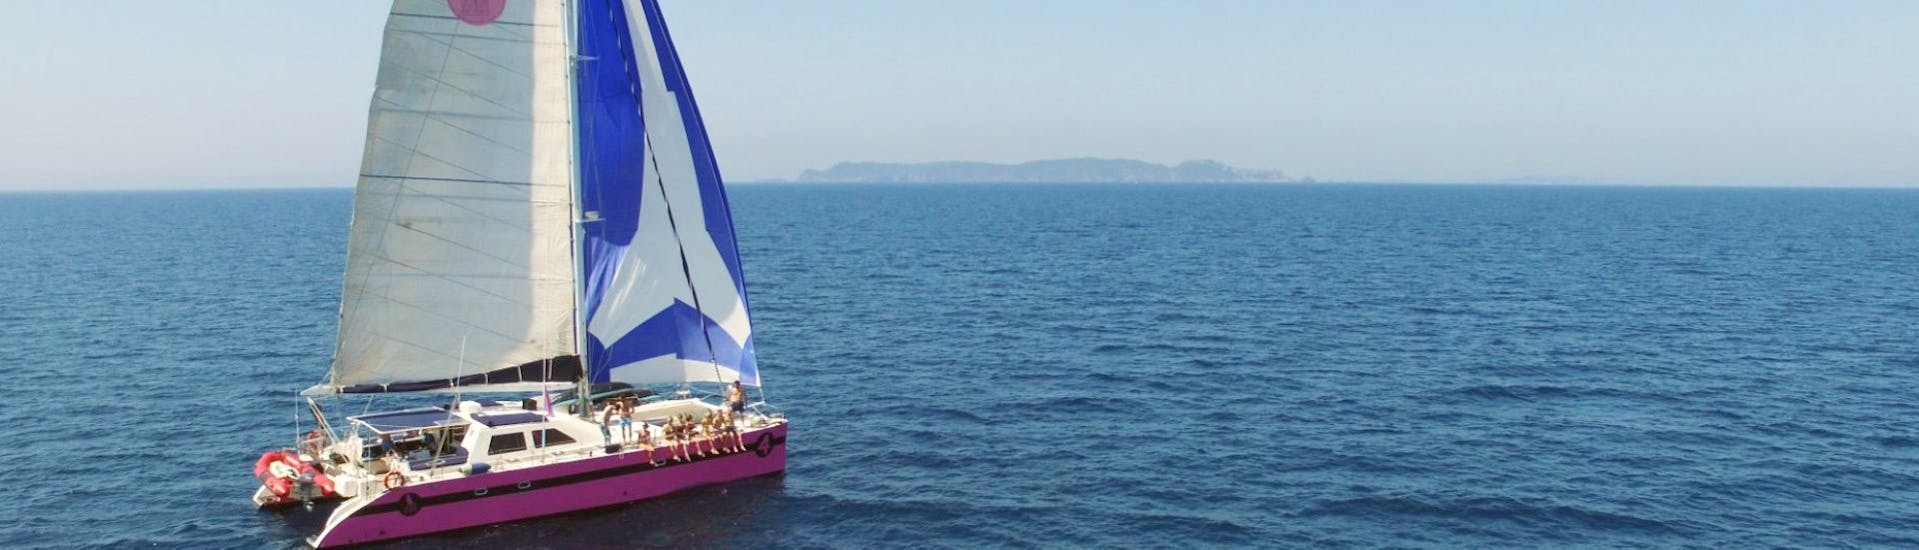 Uitzicht tijdens de Boottocht in de Golf van Morbihan met Caseneuve Maxi Catamaran.